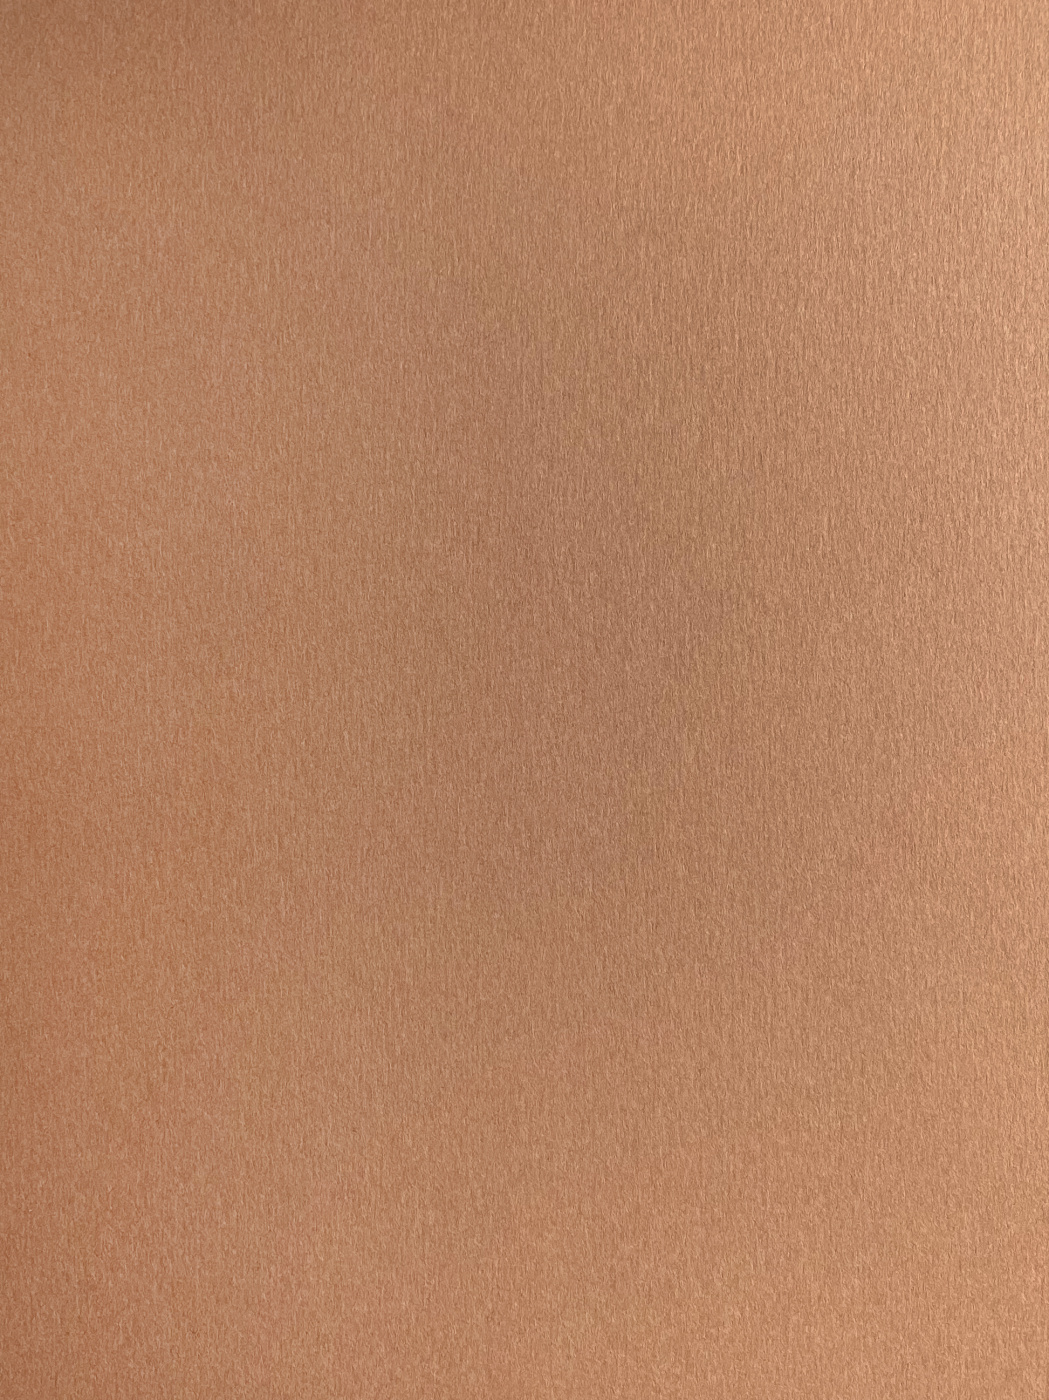 Бумага для пастели Малевичъ GrafArt А4 270 г, коричневая светлая крафт бумага 300 х 420 мм 140 г м² коричневая